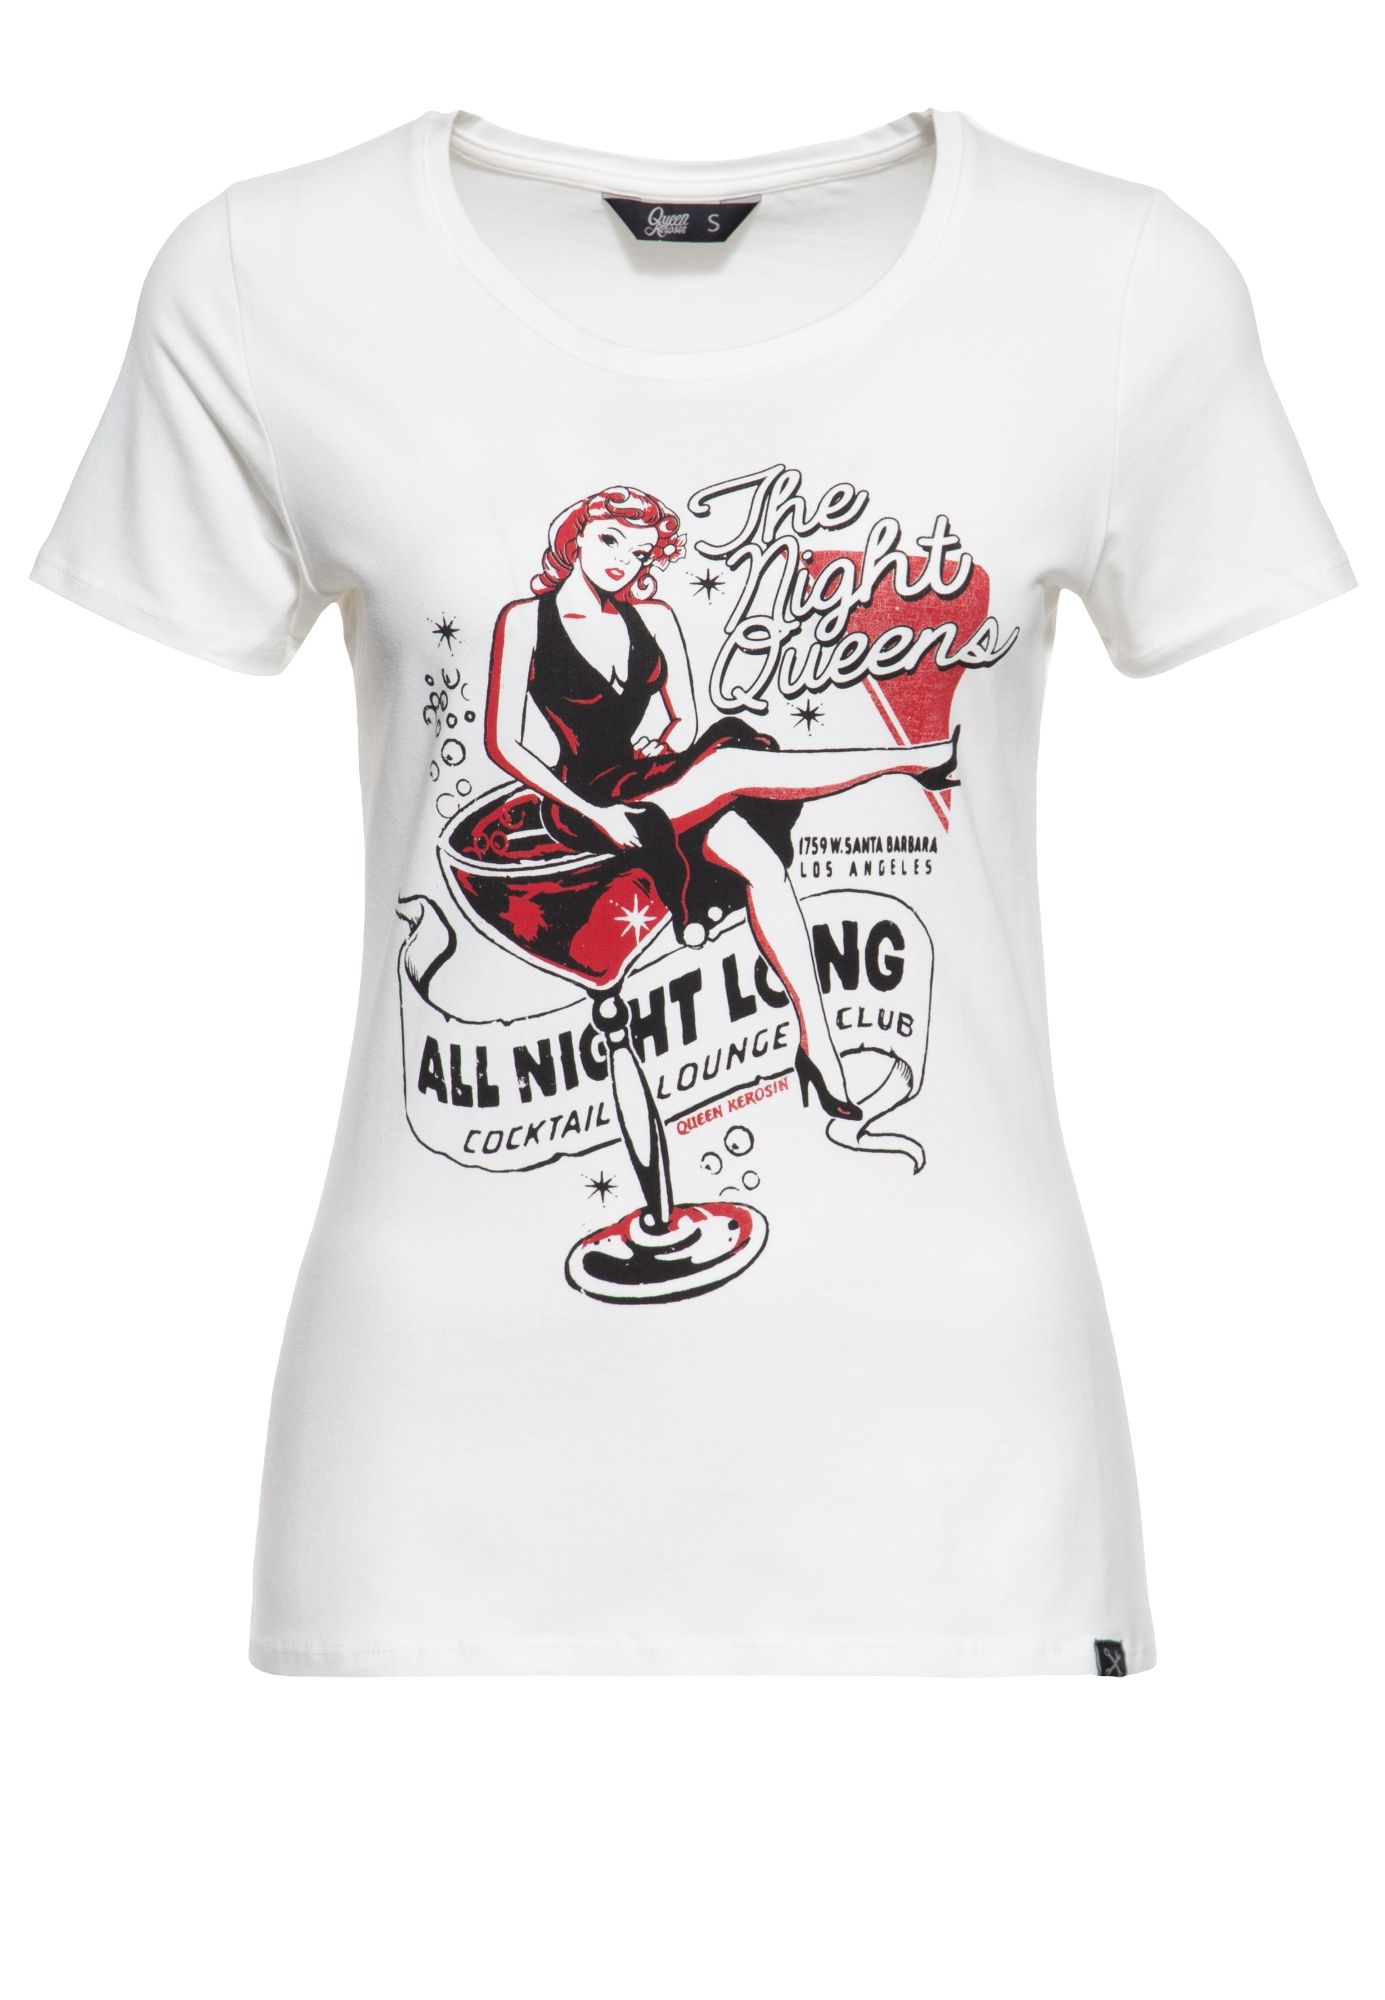 QK42153bb_tee-shirt-rockabilly-queen-kerosin-pinup-all-night-long